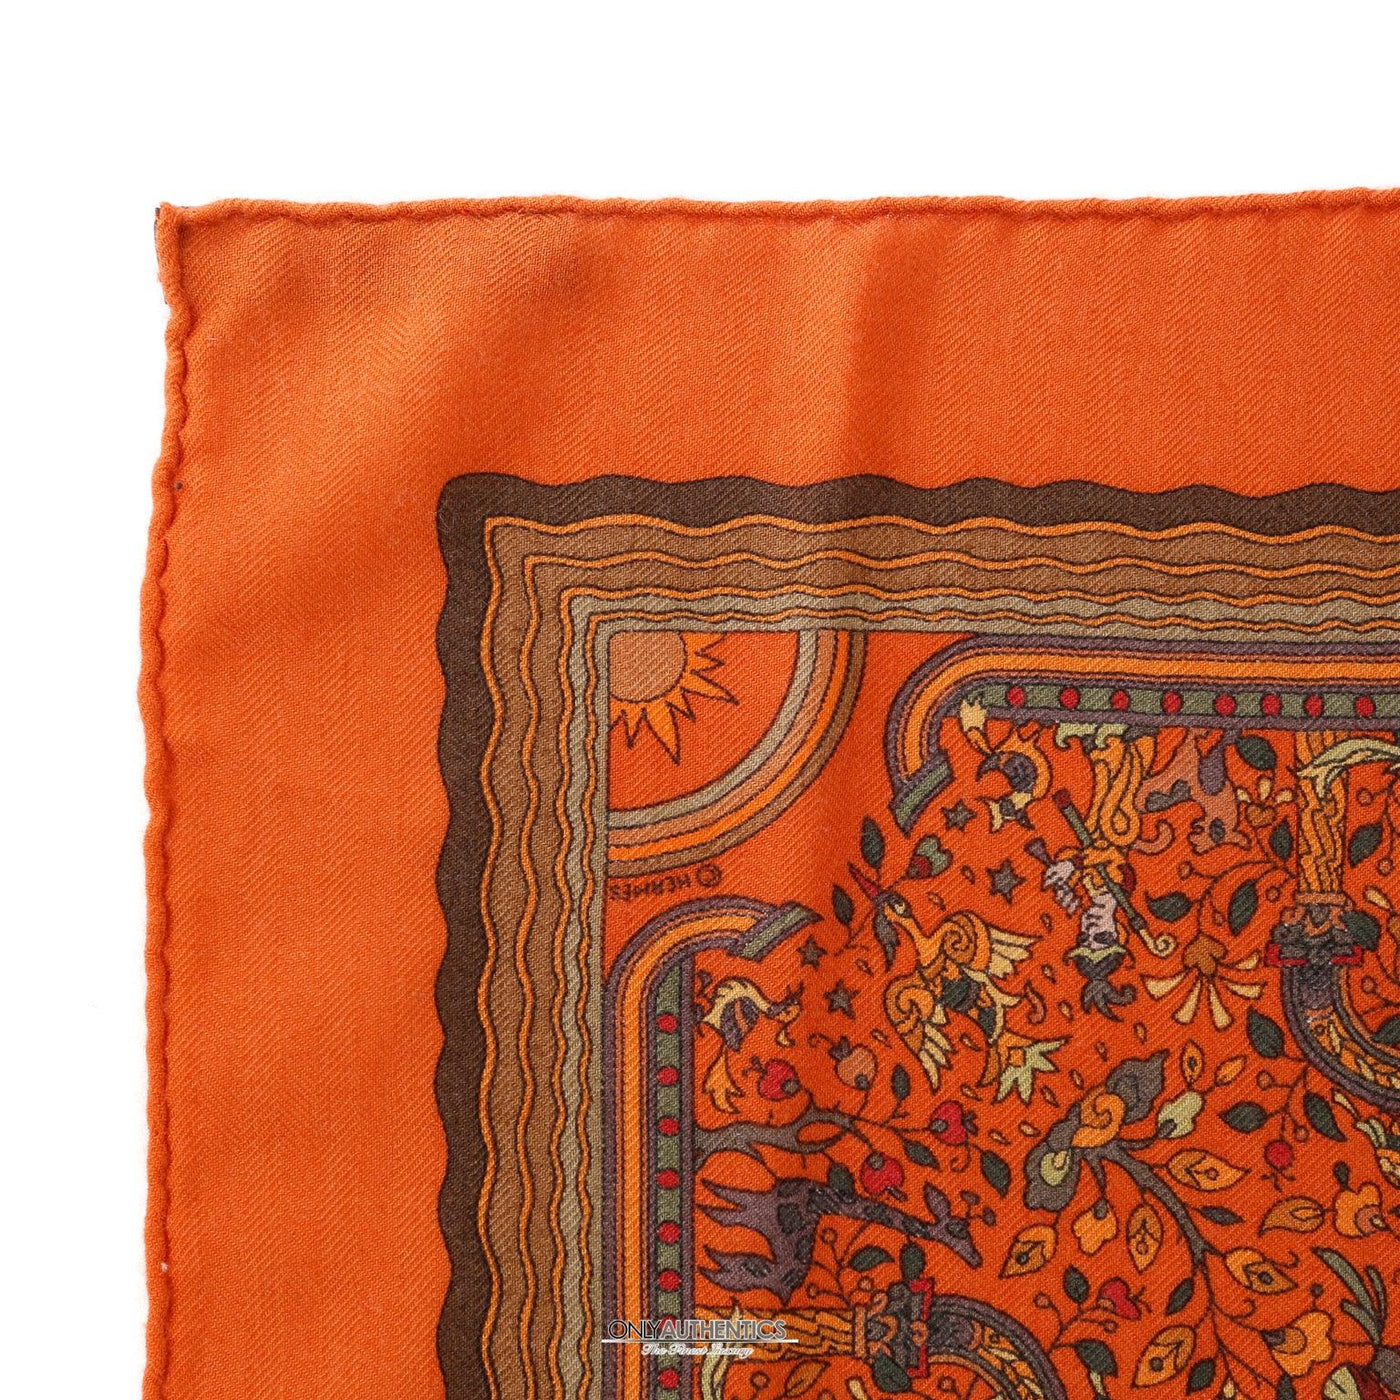 Hermès Orange Les Jardins d’Armenie Cashmere and Silk Scarf - Only Authentics